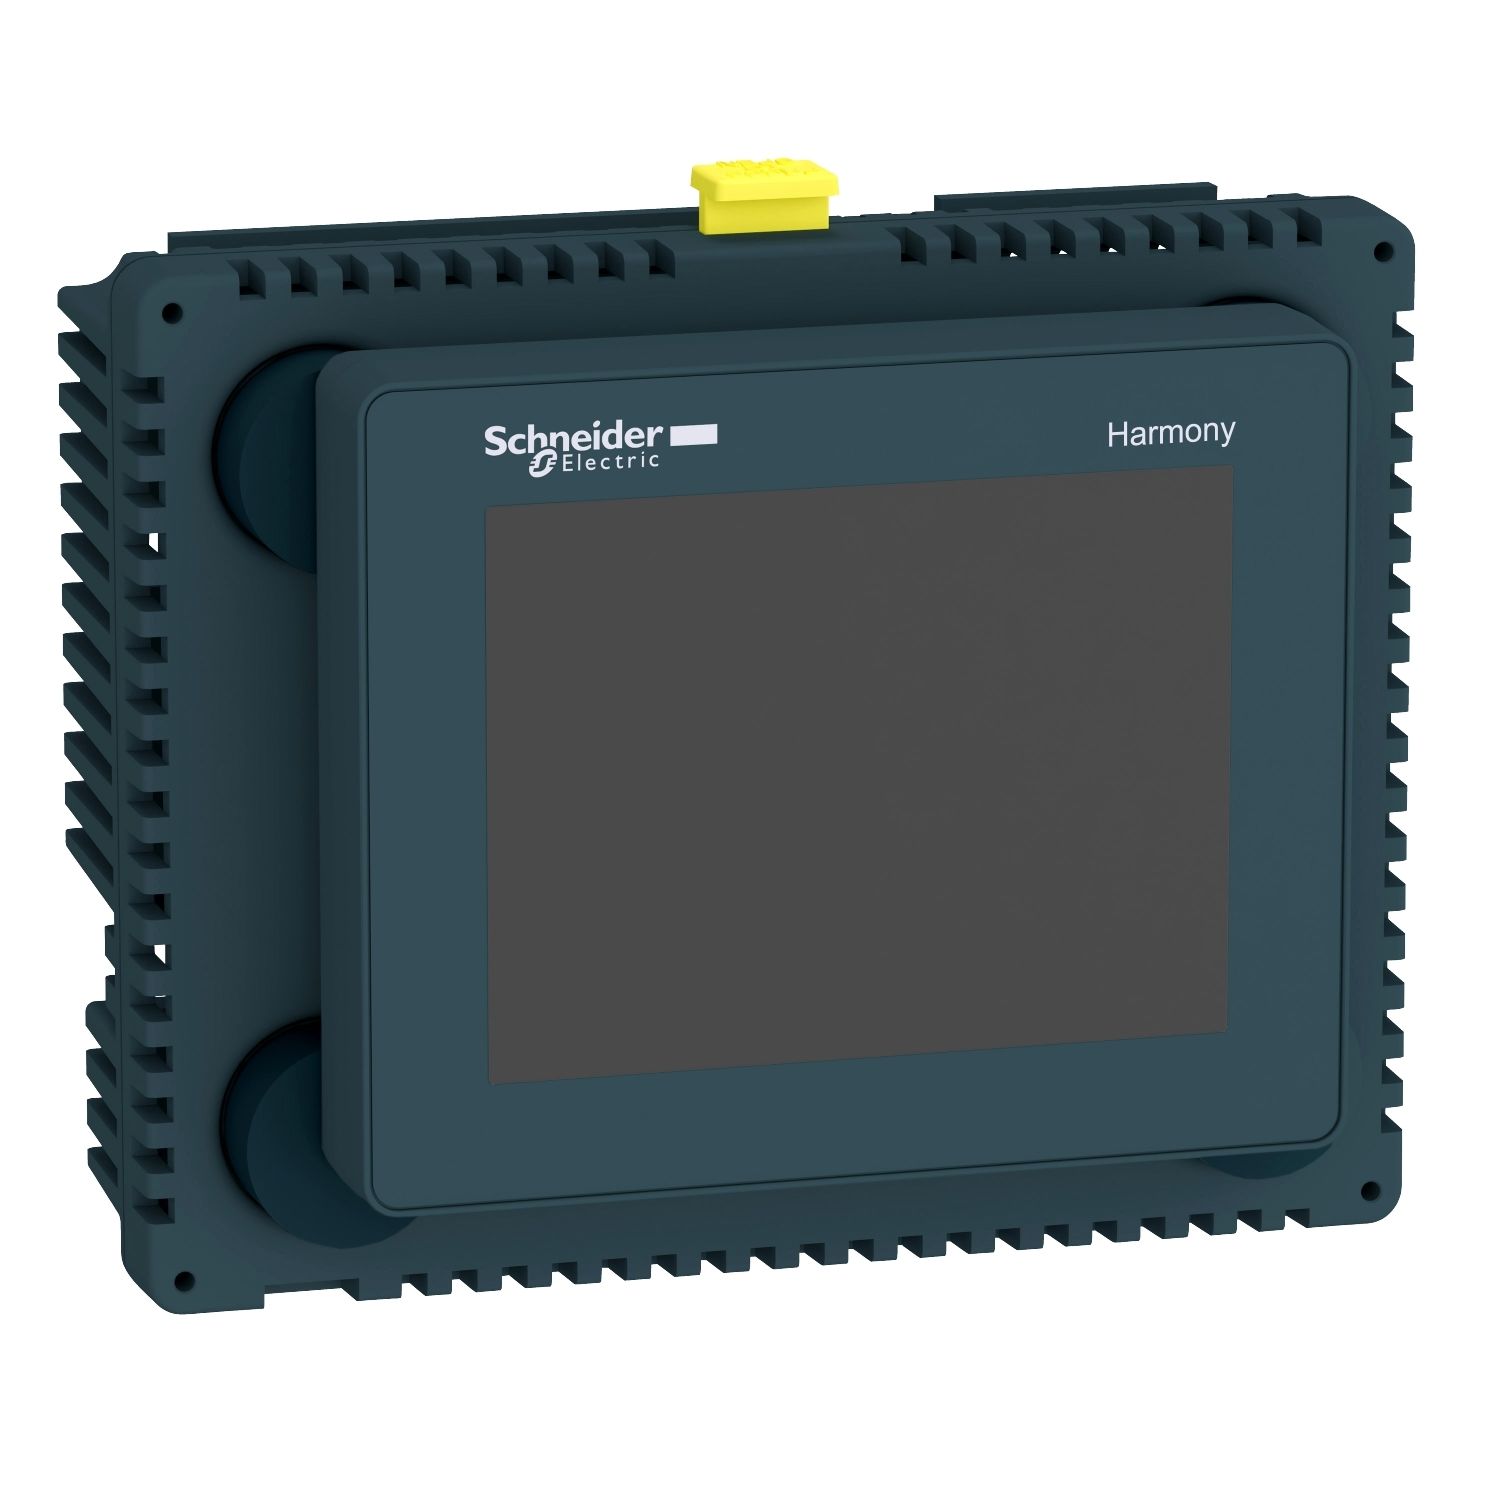 HMISCU6A5 Small touch HMI controller, Harmony SCU, 3â€5 color panel, Dig 16 inputs/10 outputs